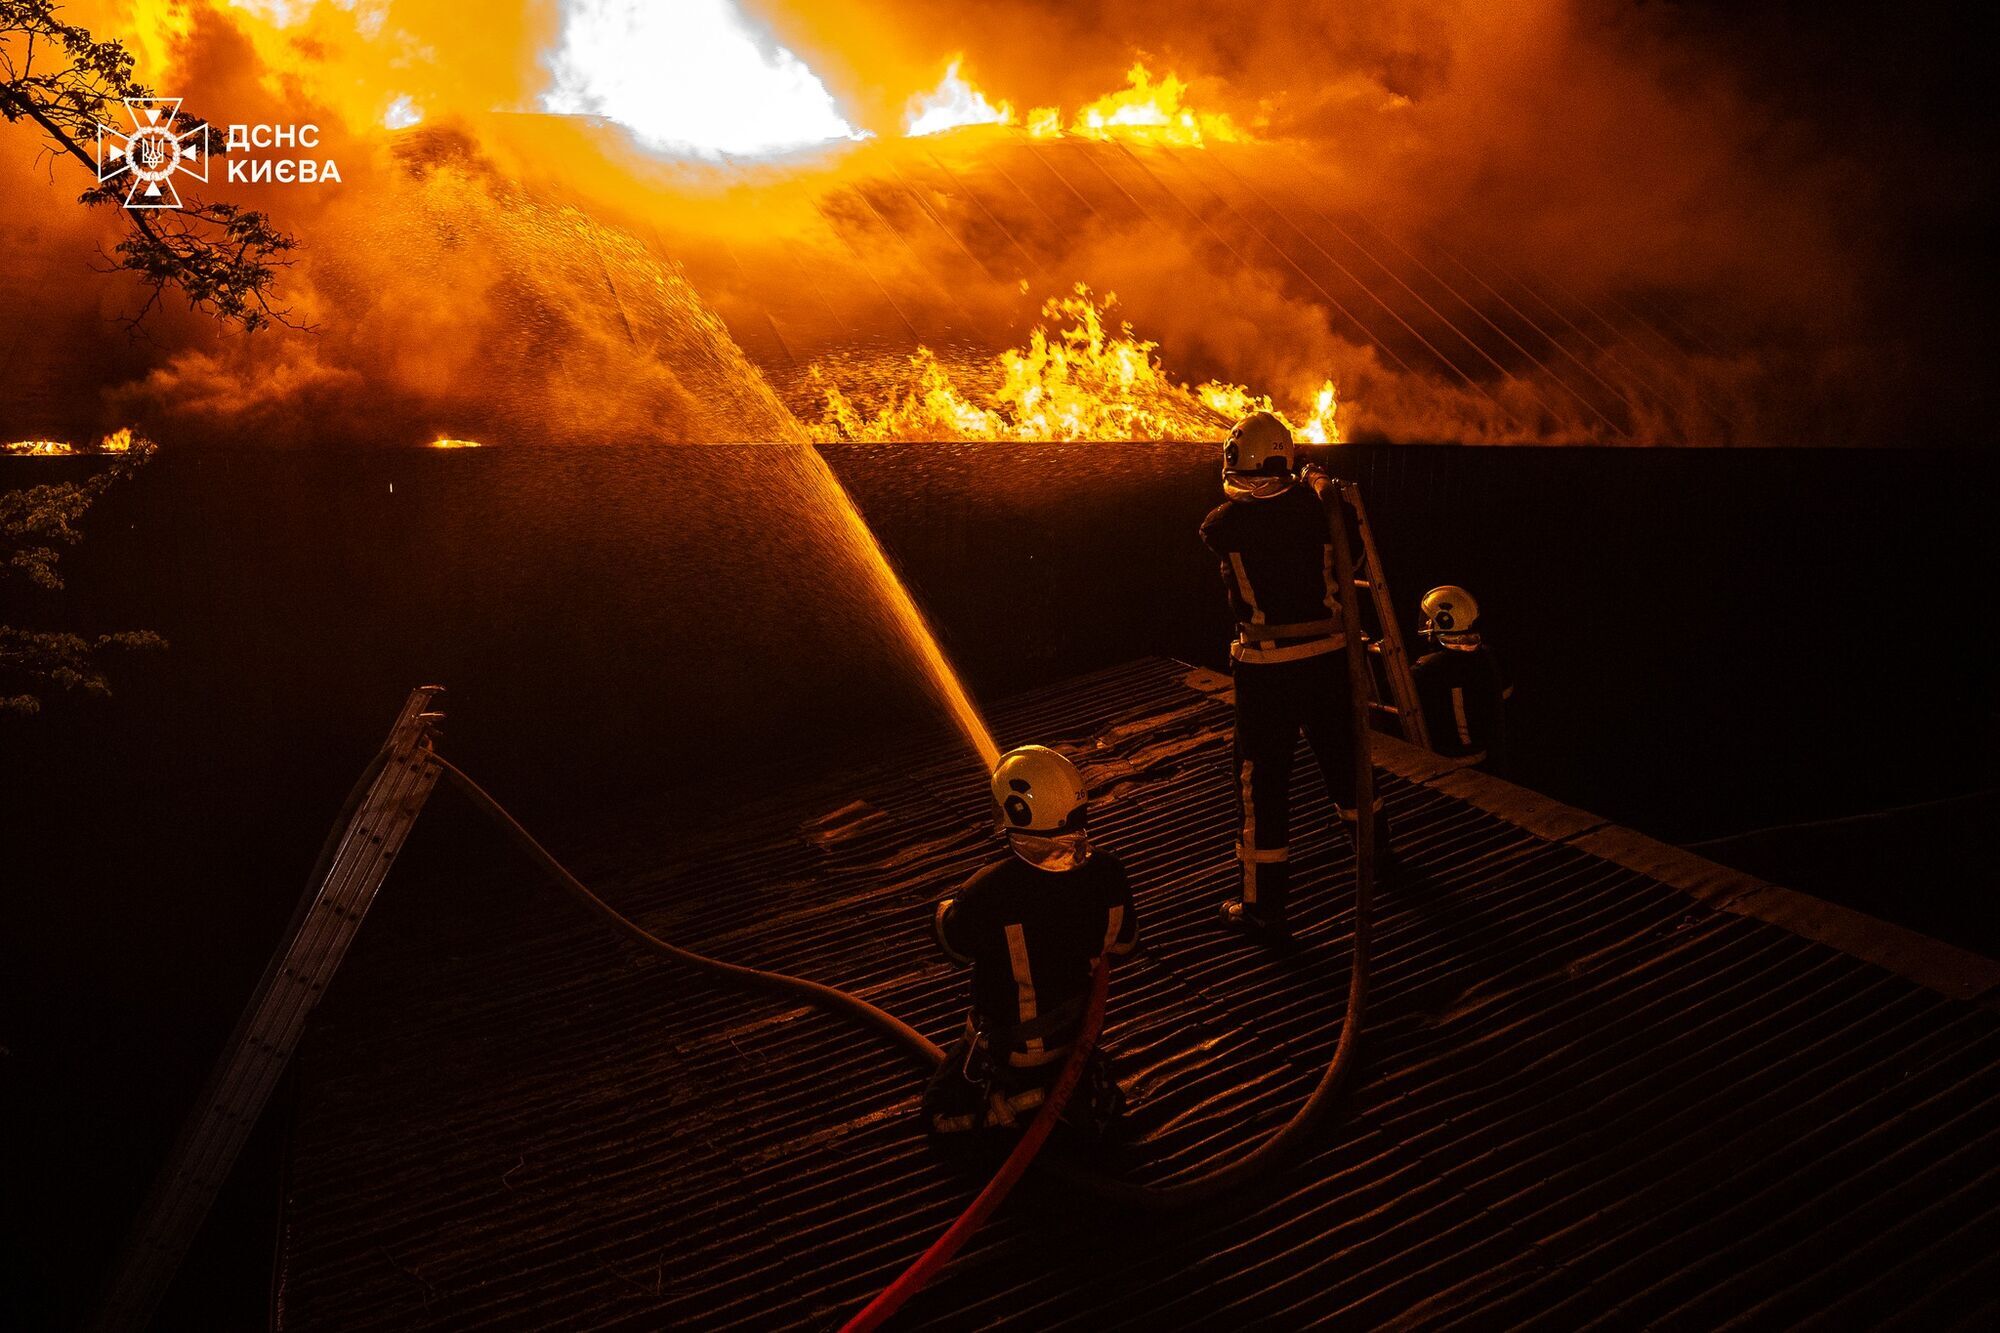 У Києві понад 3 години гасили пожежу в лазні на території ресторанного комплексу. Подробиці і відео ekikdiqrqiqdant